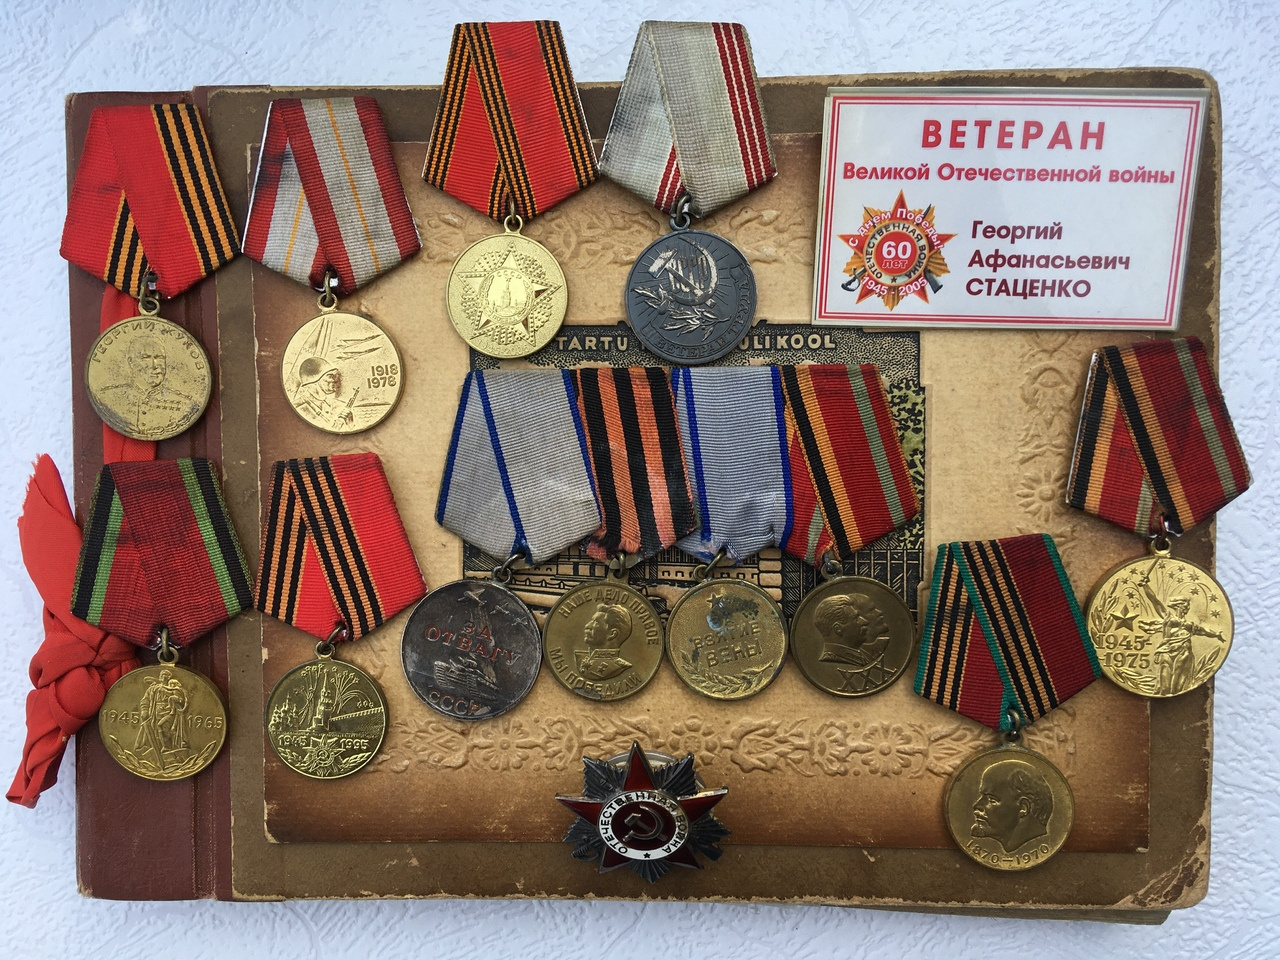 Так выглядит полный набор орденов и медалей Георгия Стаценко